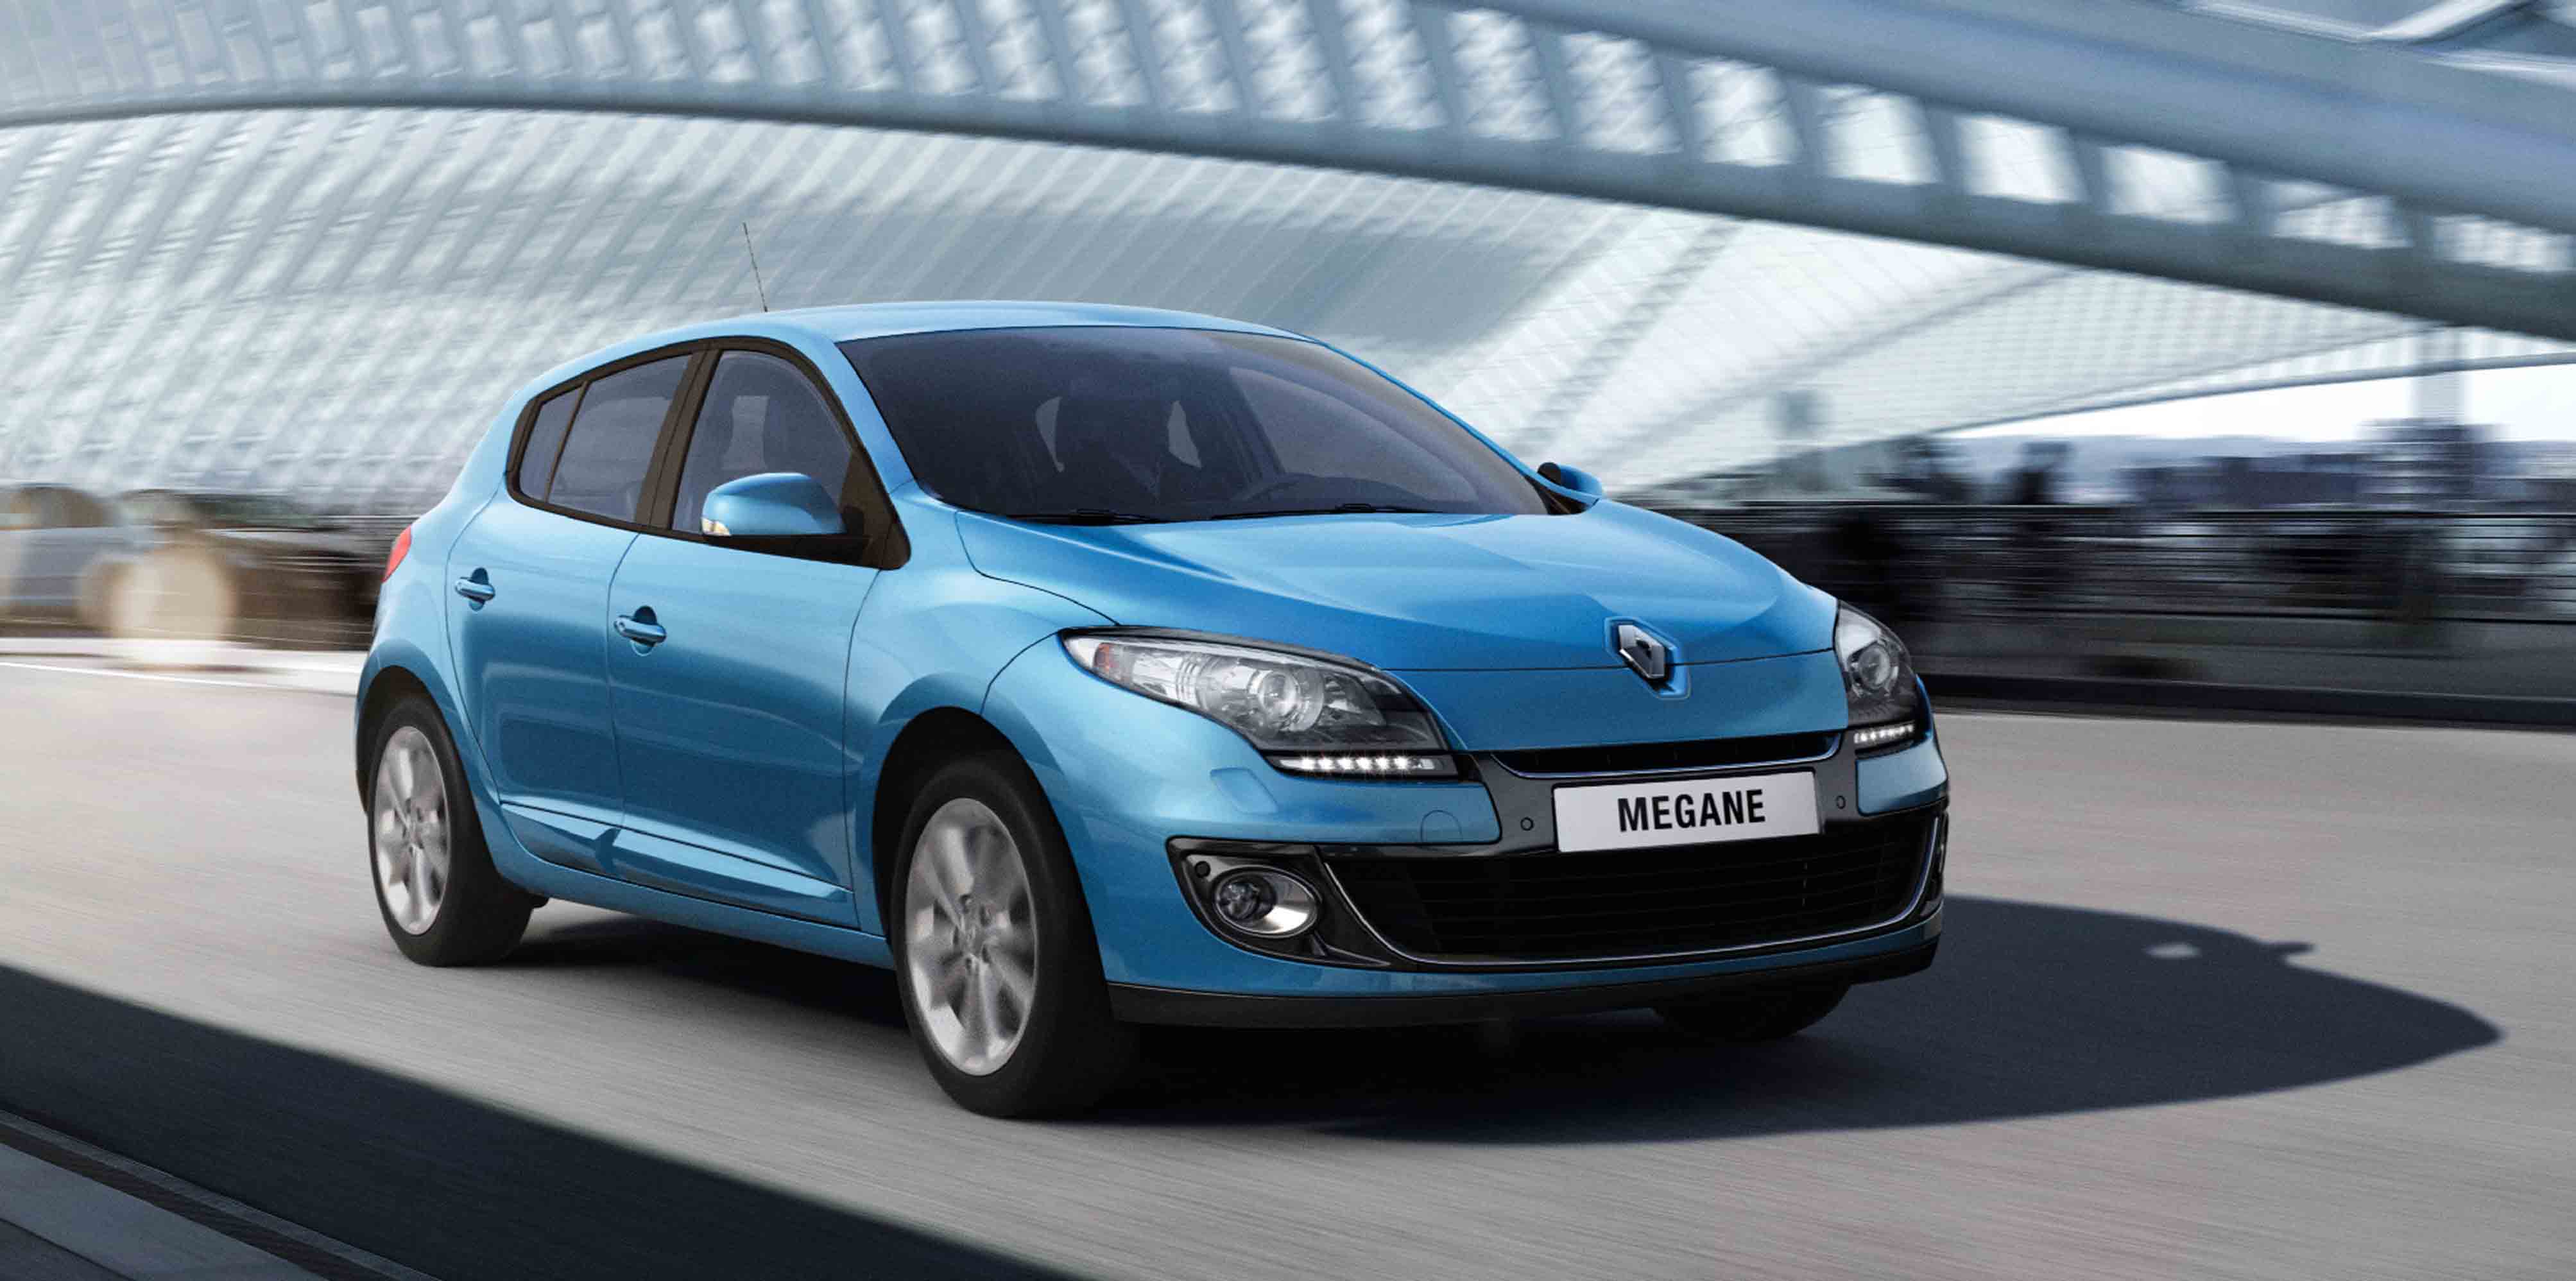 Prueba: Renault Mégane 1.5 dCi, por qué comprar o no el coche que